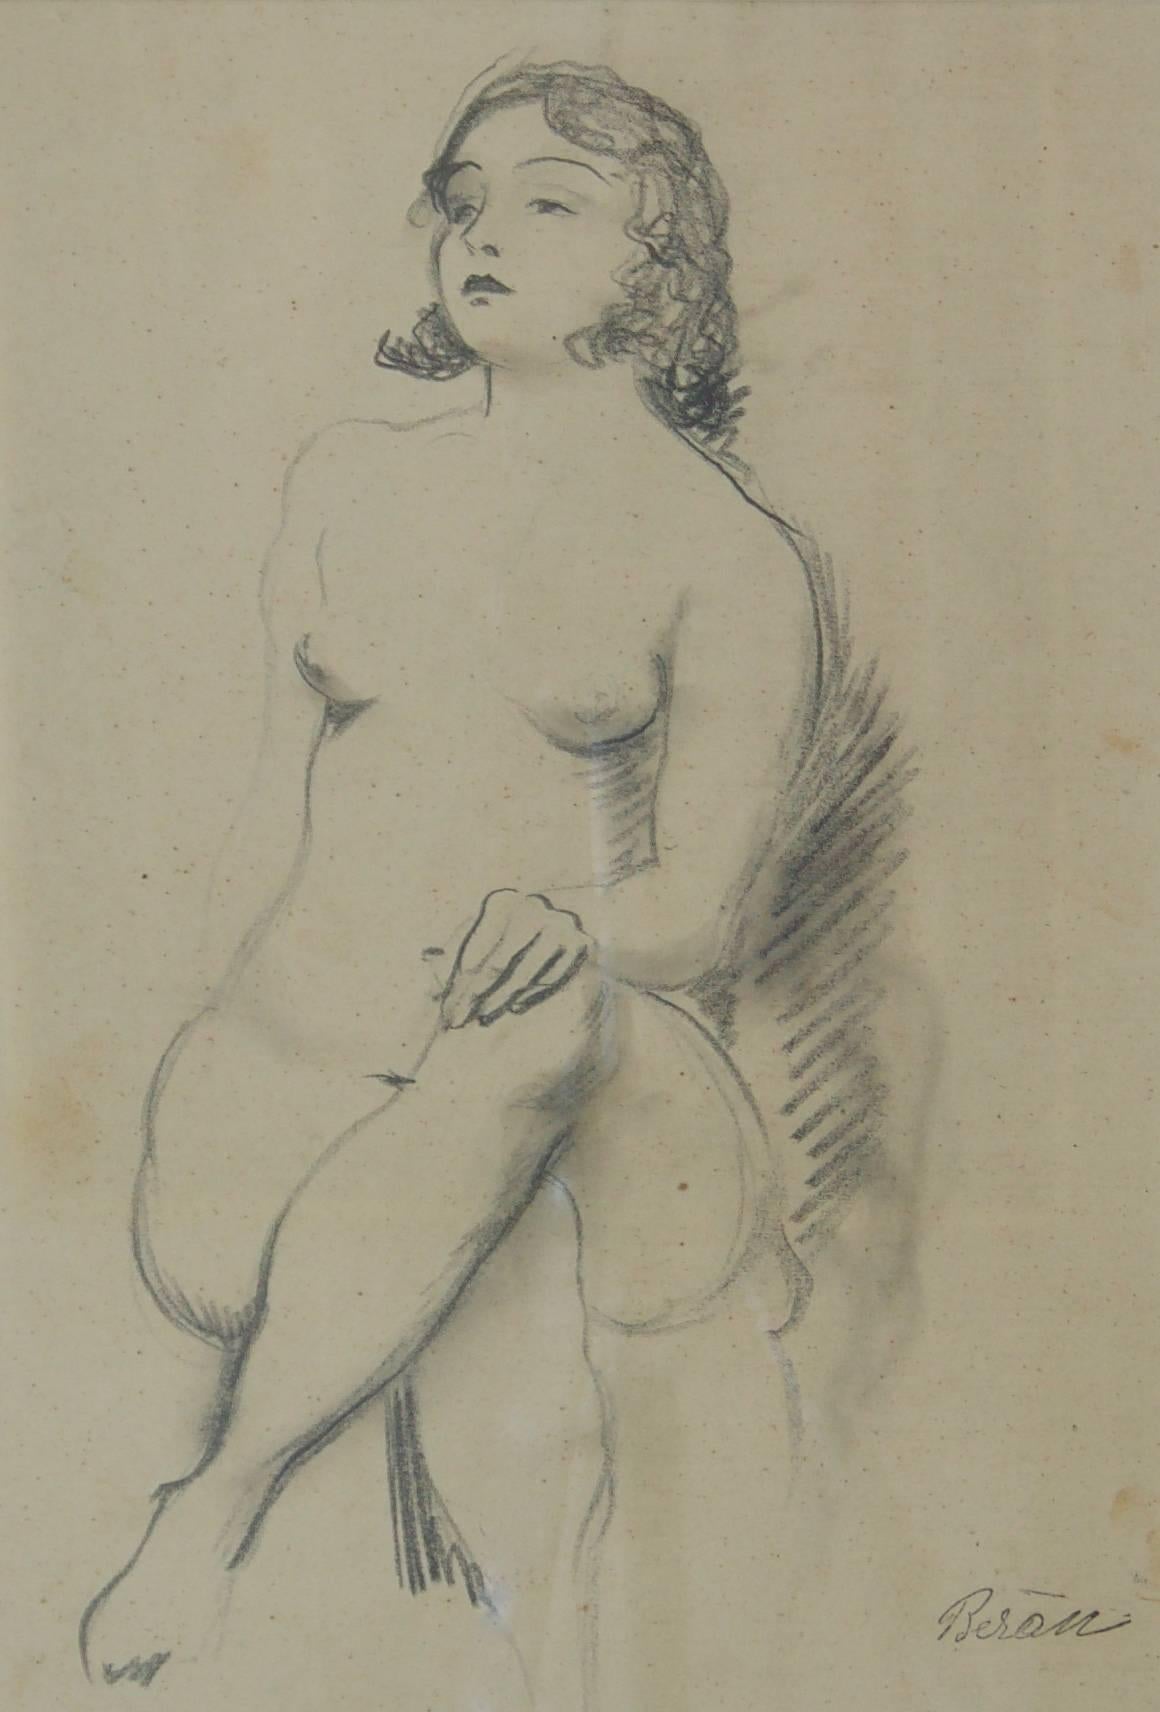 Bleistiftskizze eines Mädchens, Akt posiert, frühes 20. Jahrhundert, von Bruno Beran